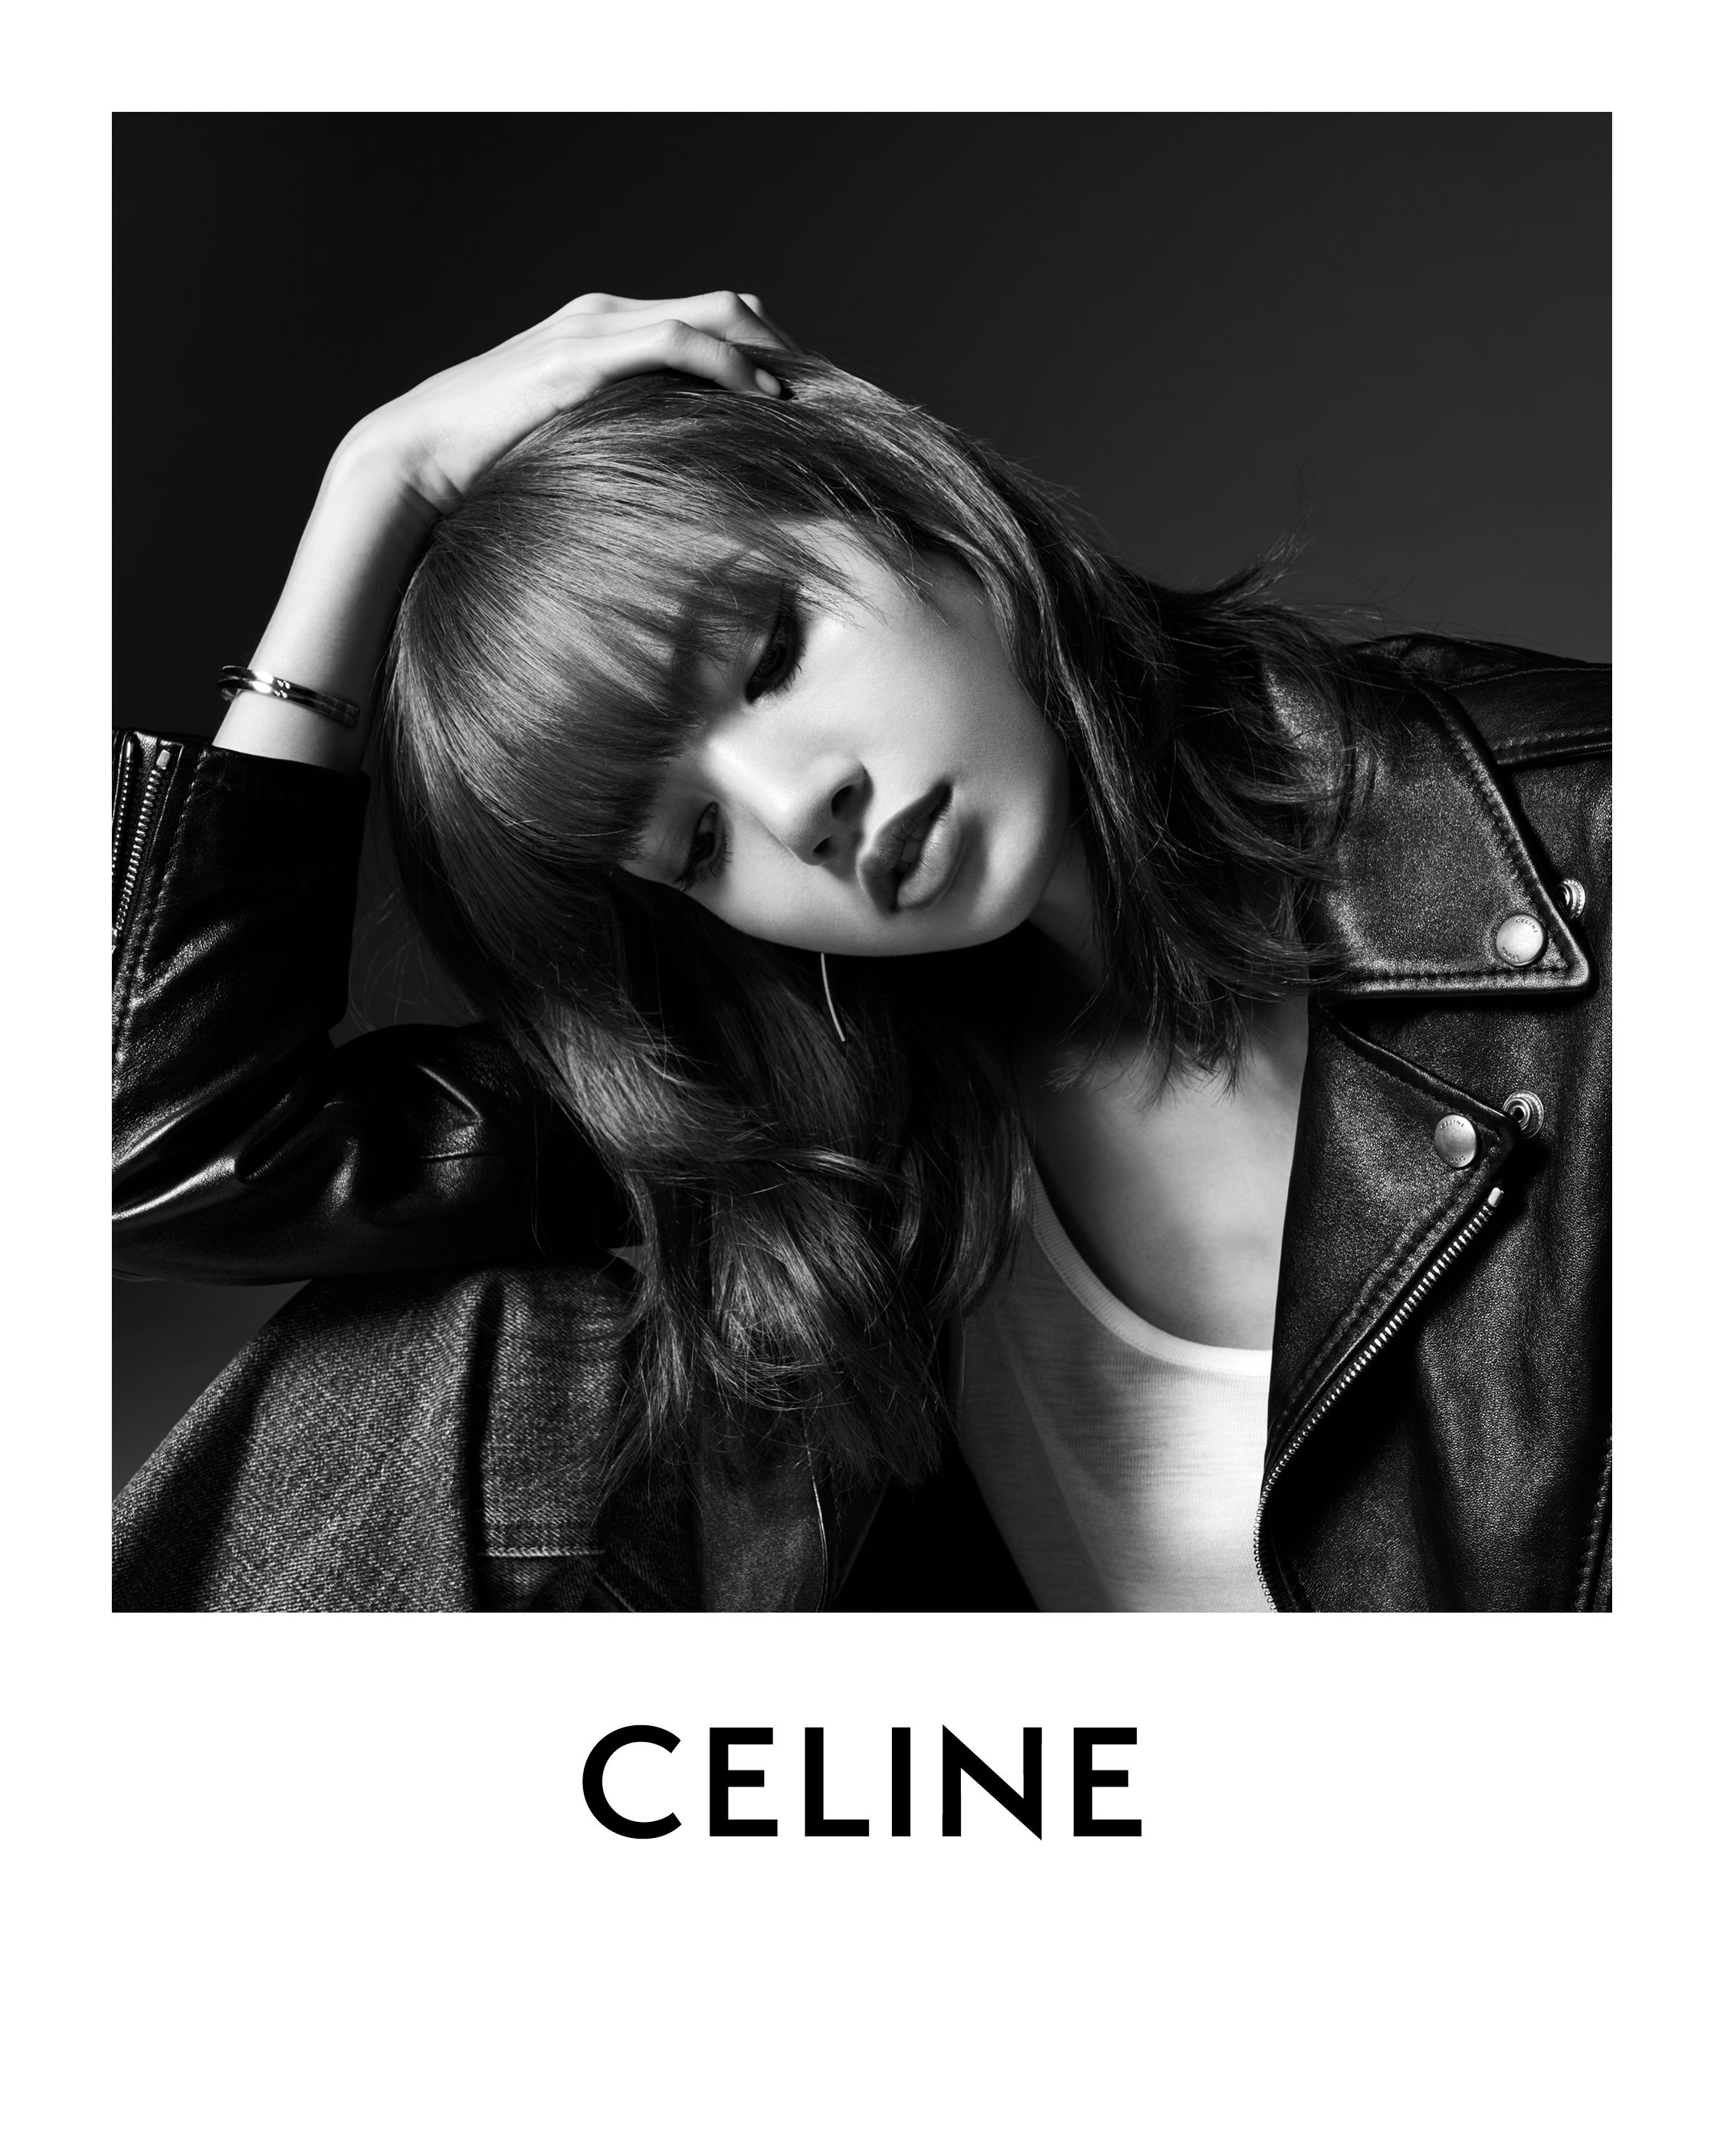 Lisa Blackpink is The New Celine Global Ambassador